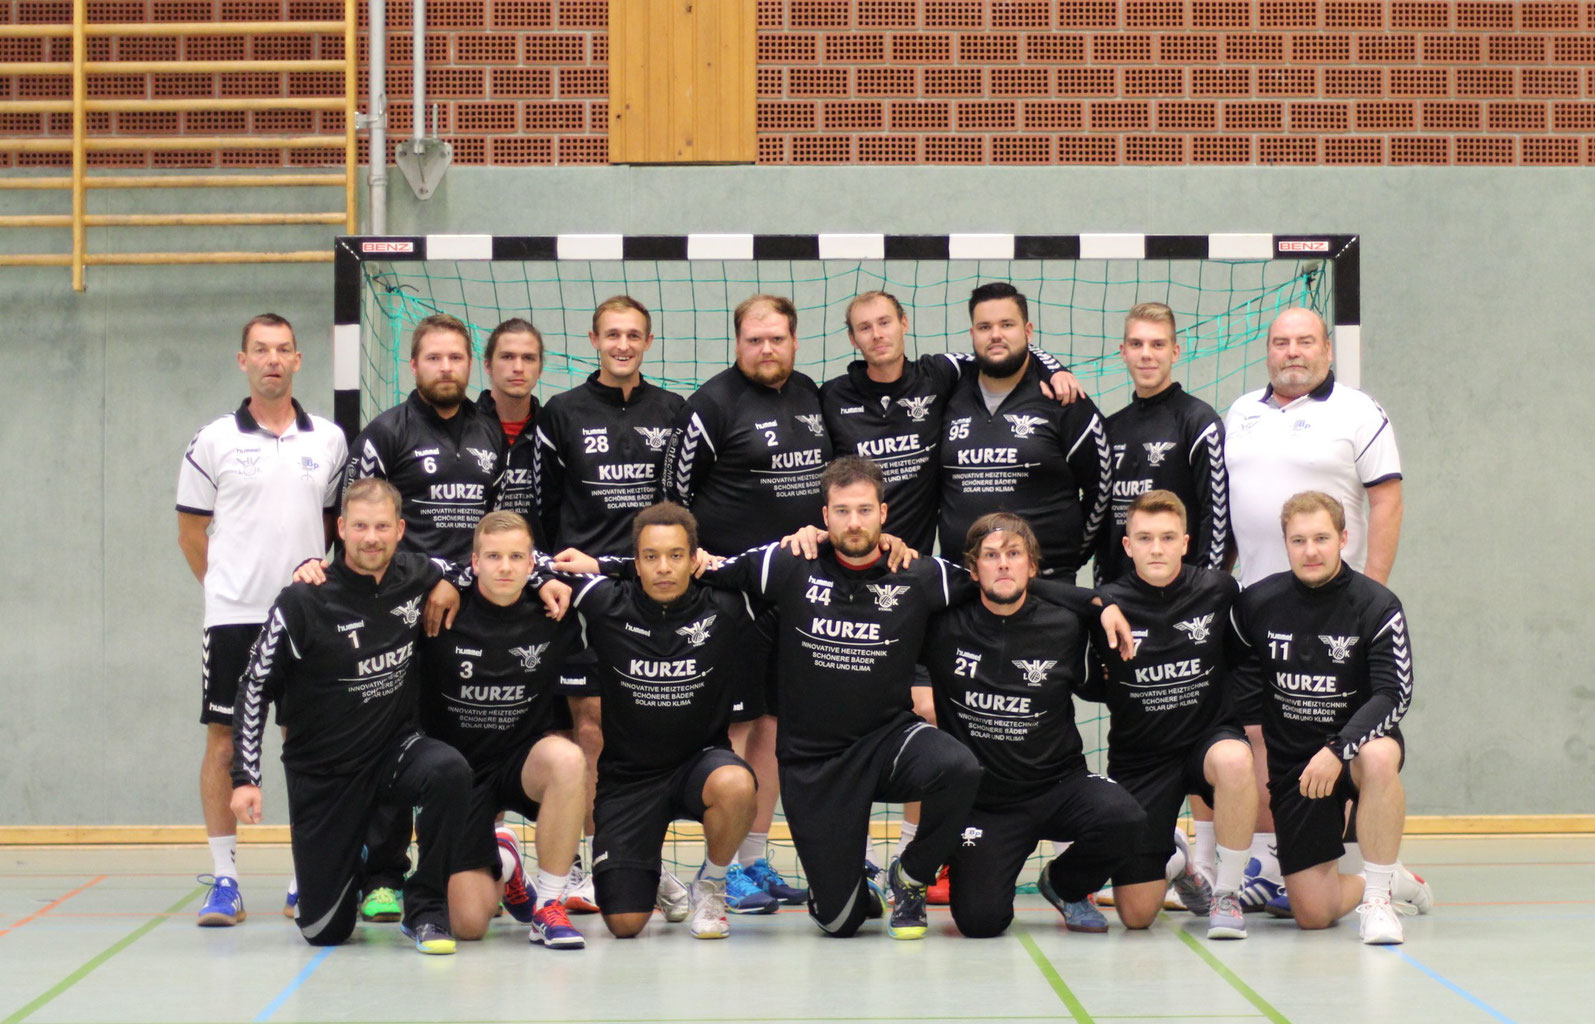 (c) Handball-stendal.de